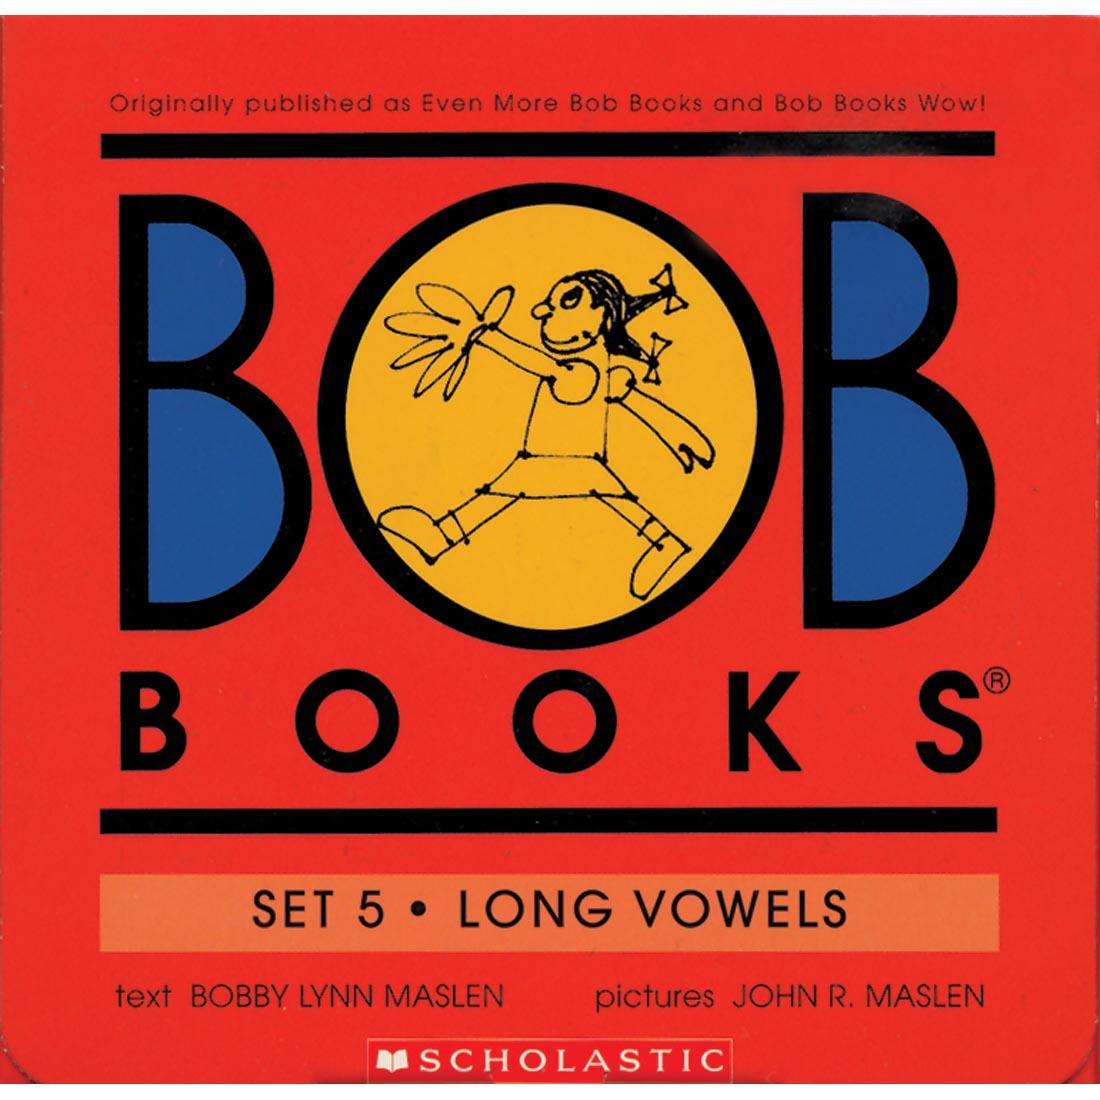 BOB Books by Scholastic Set 5: Long Vowels